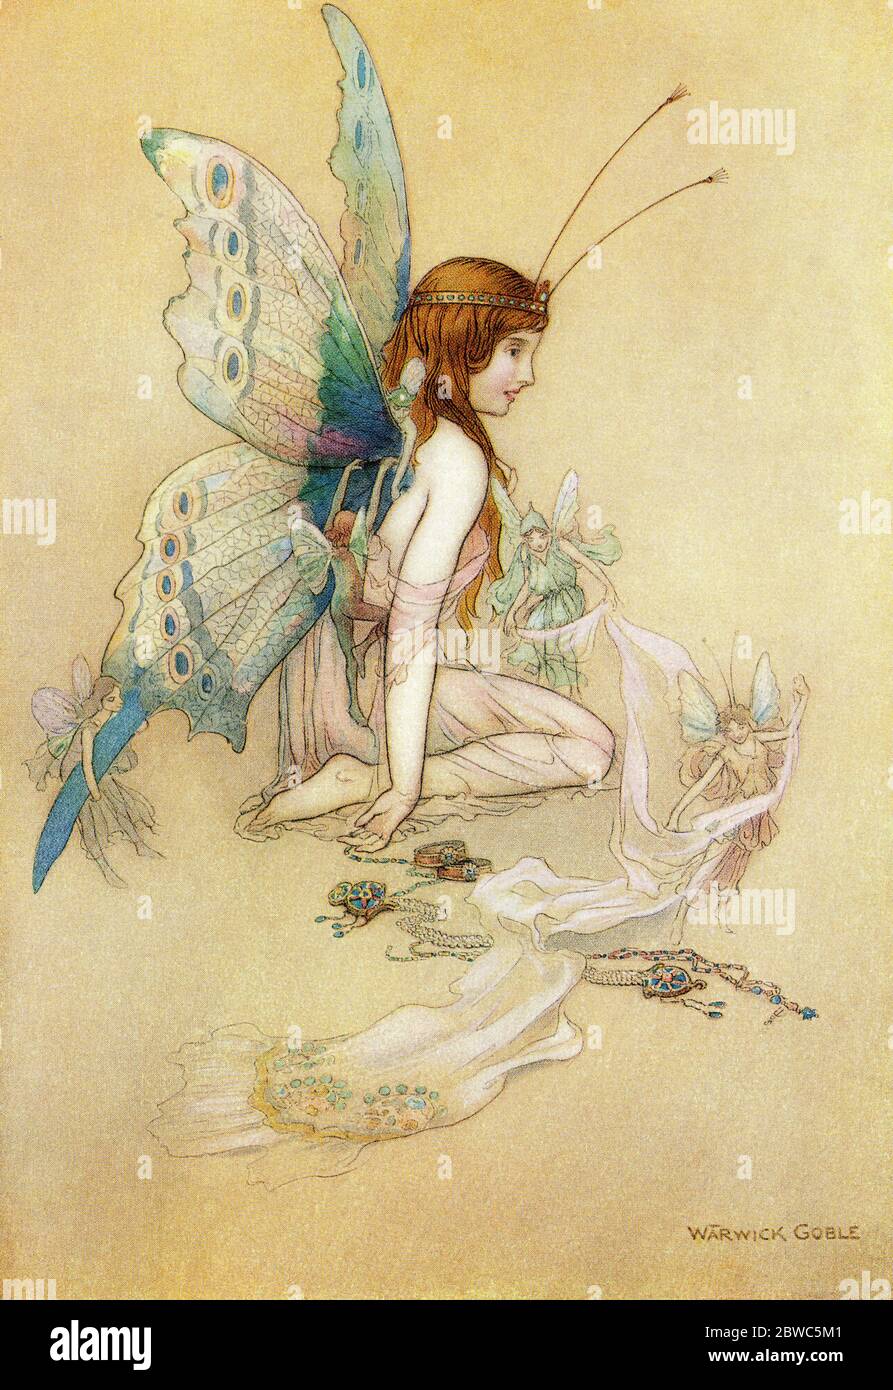 "Die Feen kamen am Fenster herein und brachten ihr so ein hübsches Paar Flügel". Illustration von Warwick Goble. Aus den Wasserbabys, veröffentlicht 1922. Stockfoto